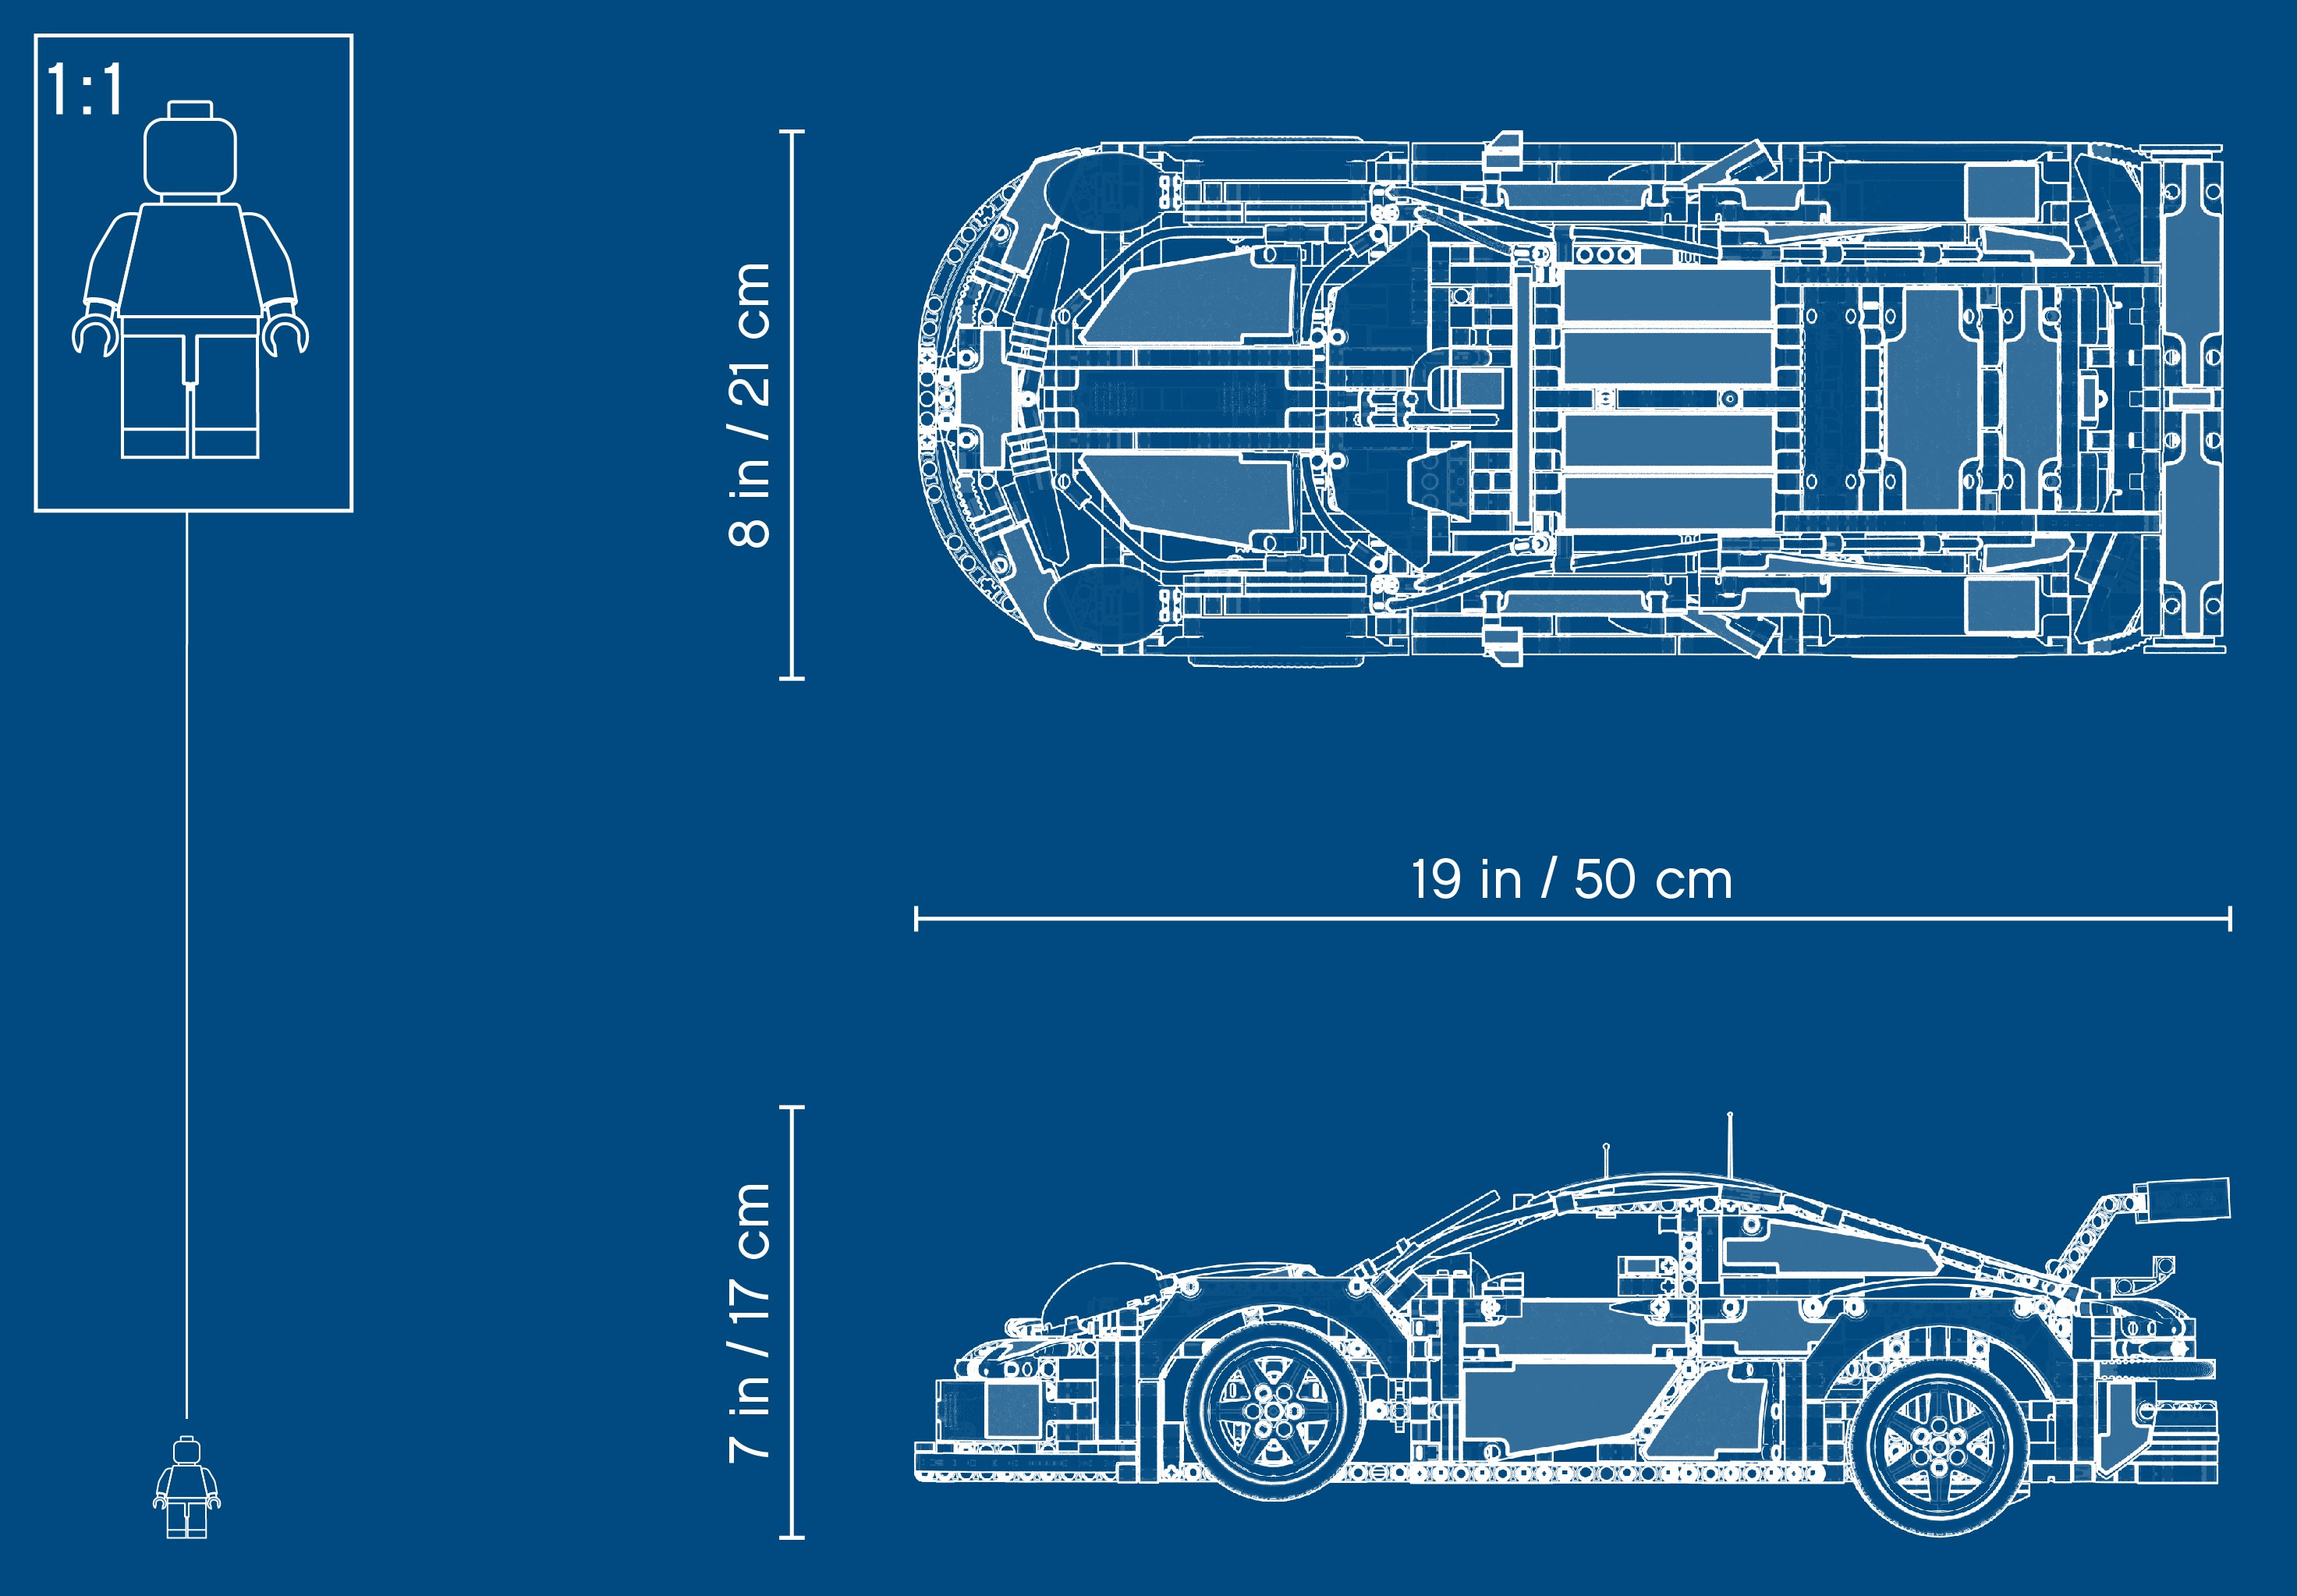 LEGO Technic Porsche 911 RSR Sports Car